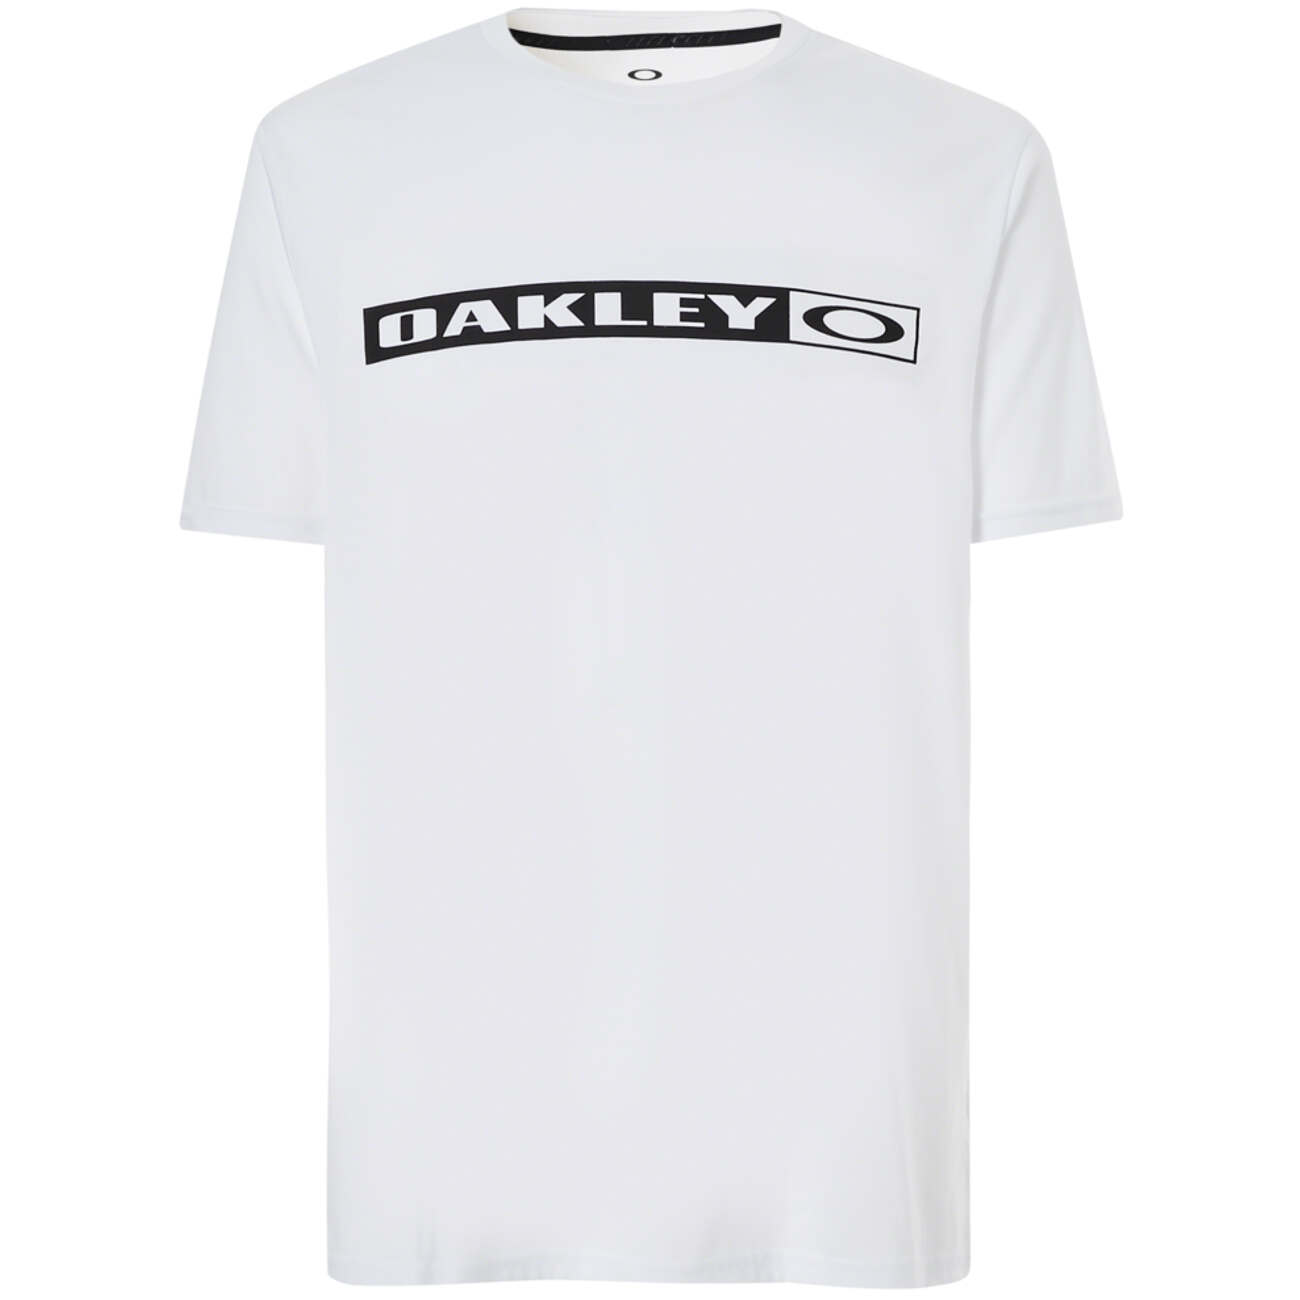 Oakley T-Shirt New Original White